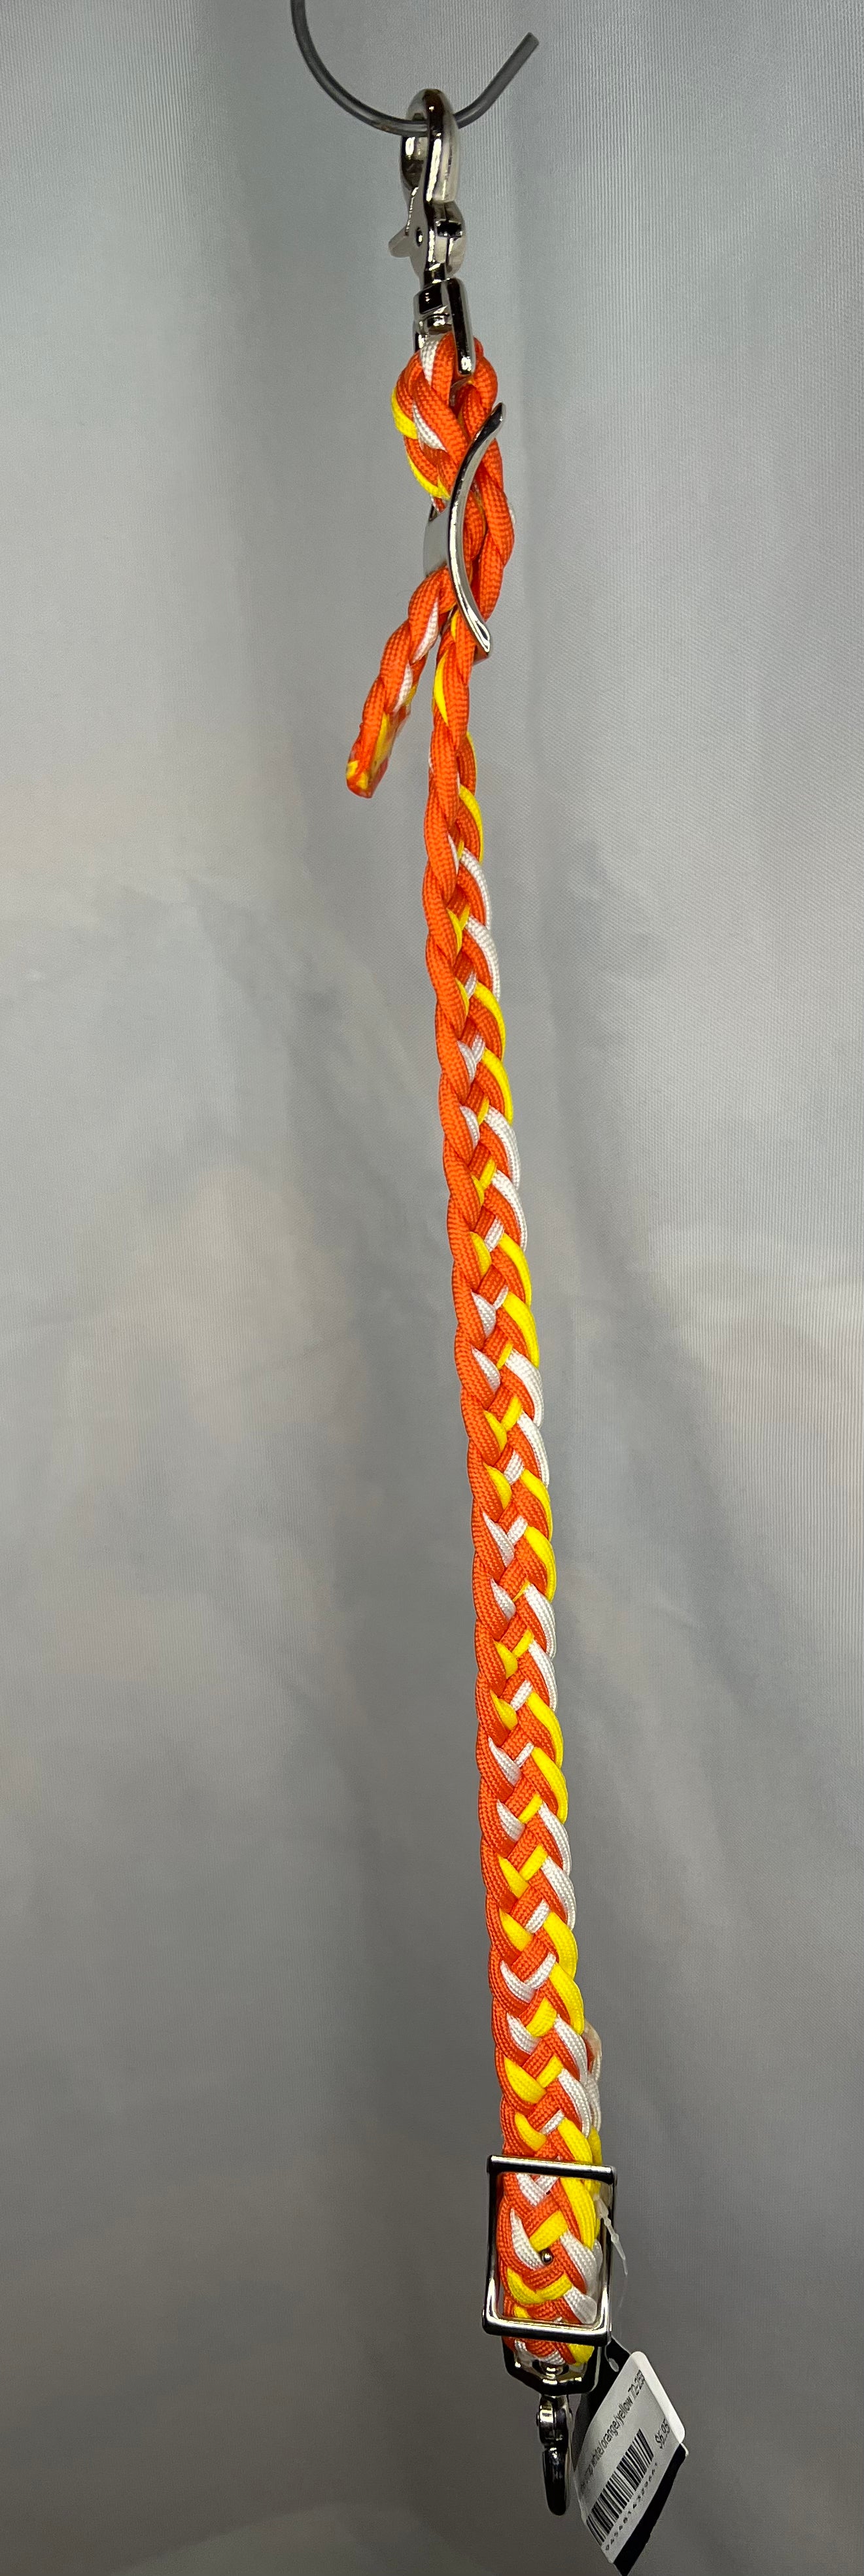 Wither strap white/orange/yellow 72-253